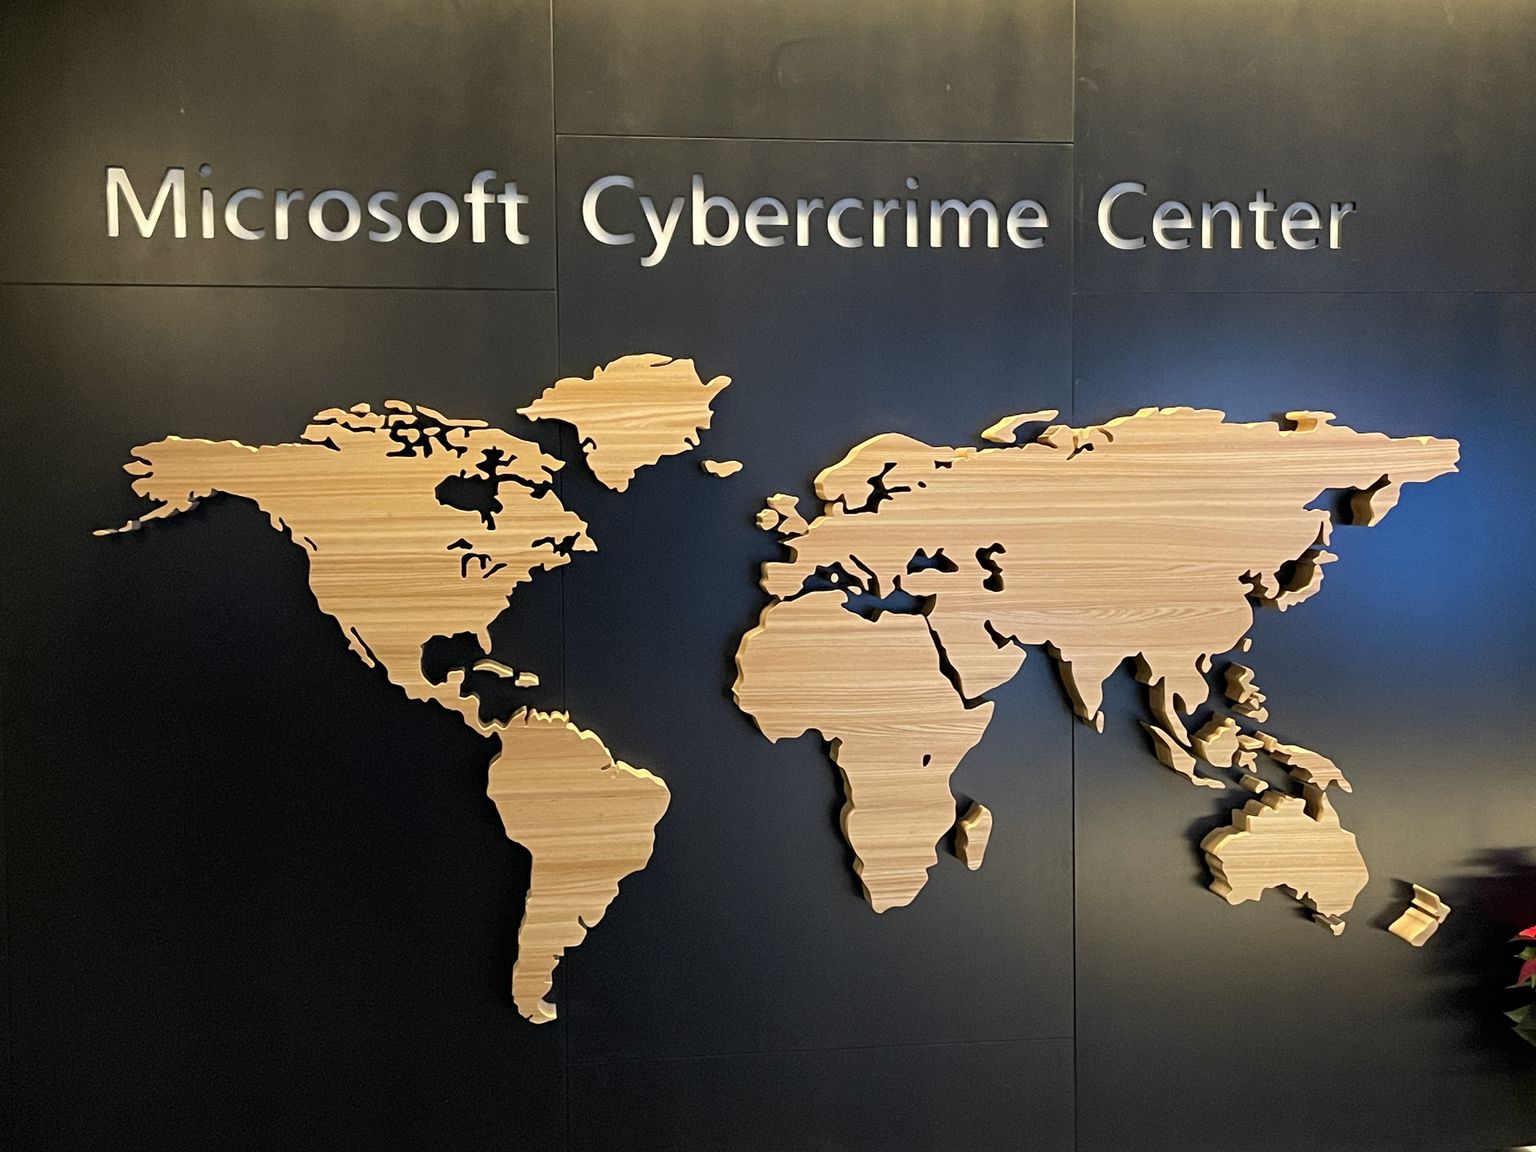 Microsoft Crime Center. Liela mēroga kiberoperācijām speciālisti pulcējas Microsoft Crime Center (Noziegumu centrā). Uz vienīgās sienas, ko šeit atļauts fotografēt, ir pasaules karte, kas simbolizē uzņēmuma globālo tvērienu. Lielās telpas aiz biezām stikla sienām un elektroniski slēdzamām durvīm ir pilnas ar datoriem un darbstacijām speciālo operāciju veikšanai.